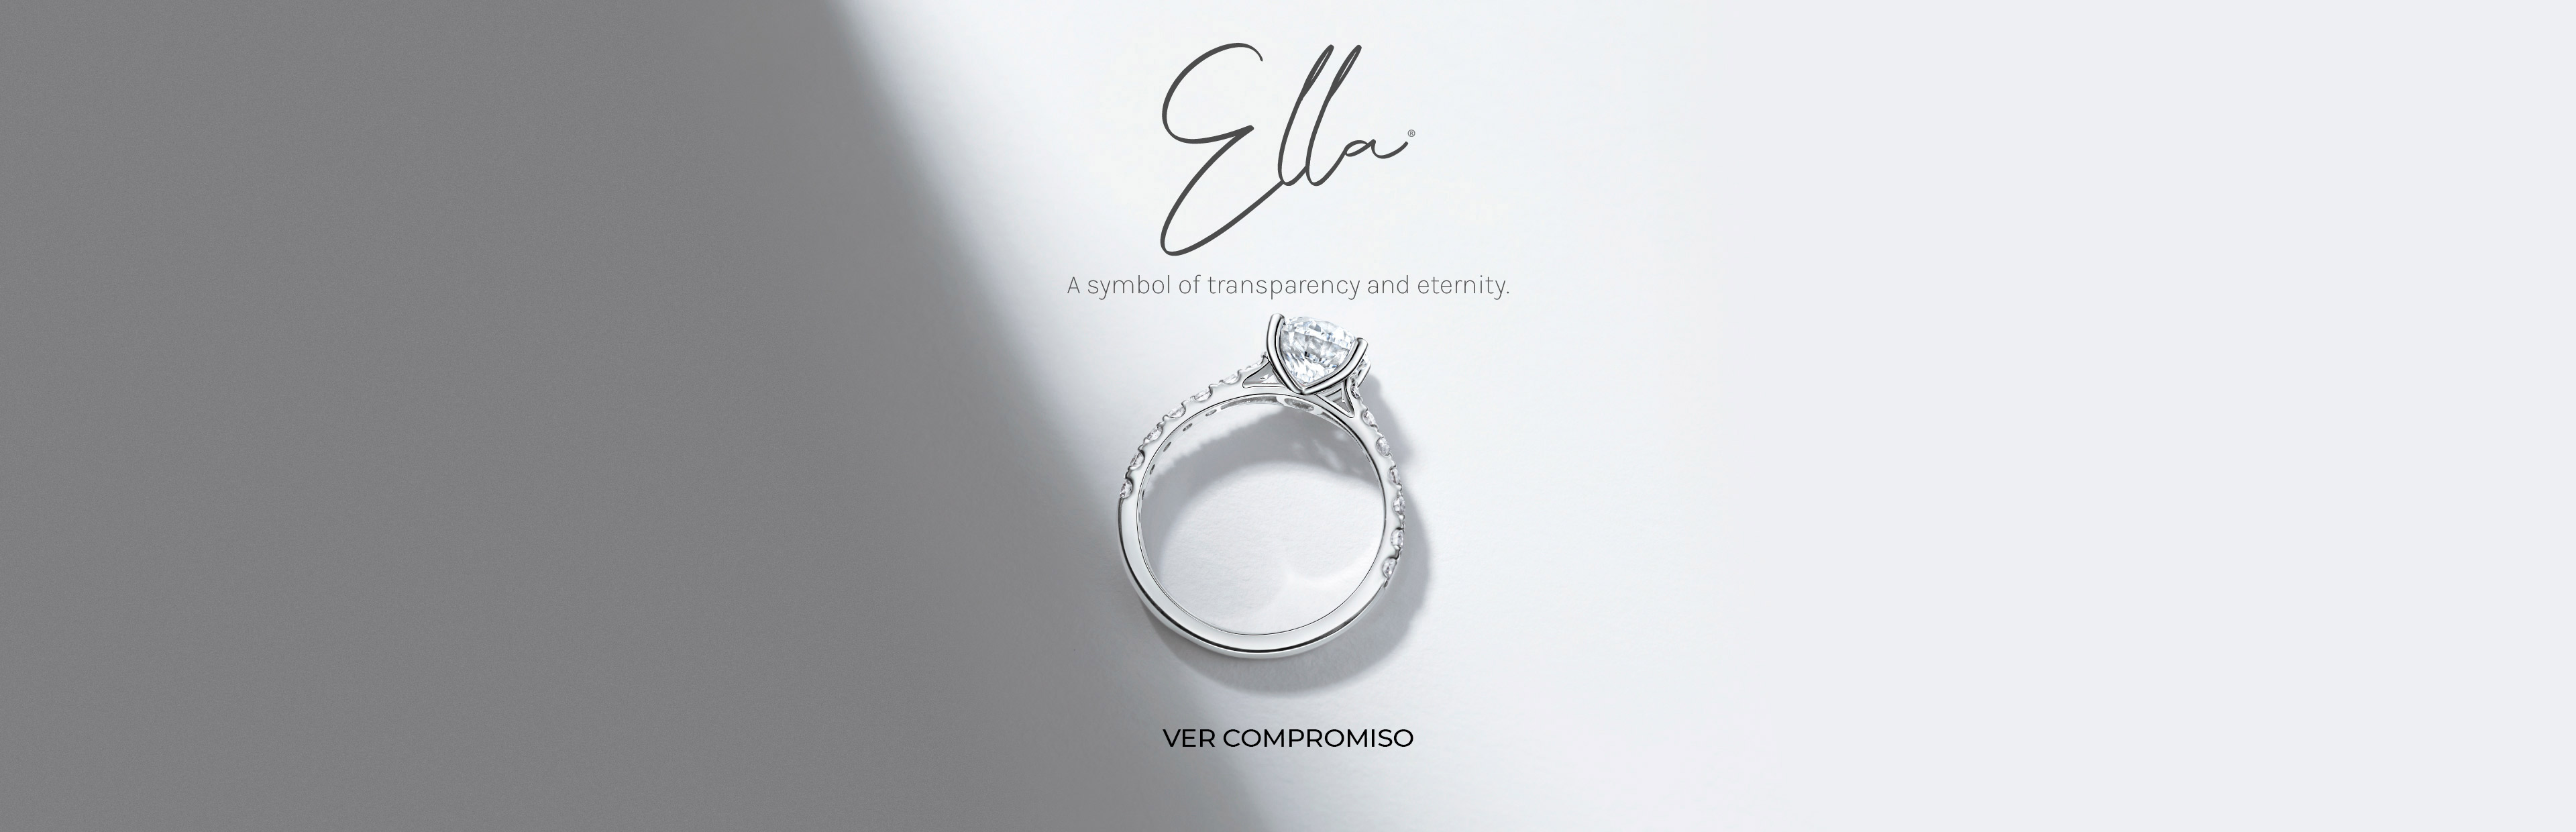 Promesa anillo Ella®